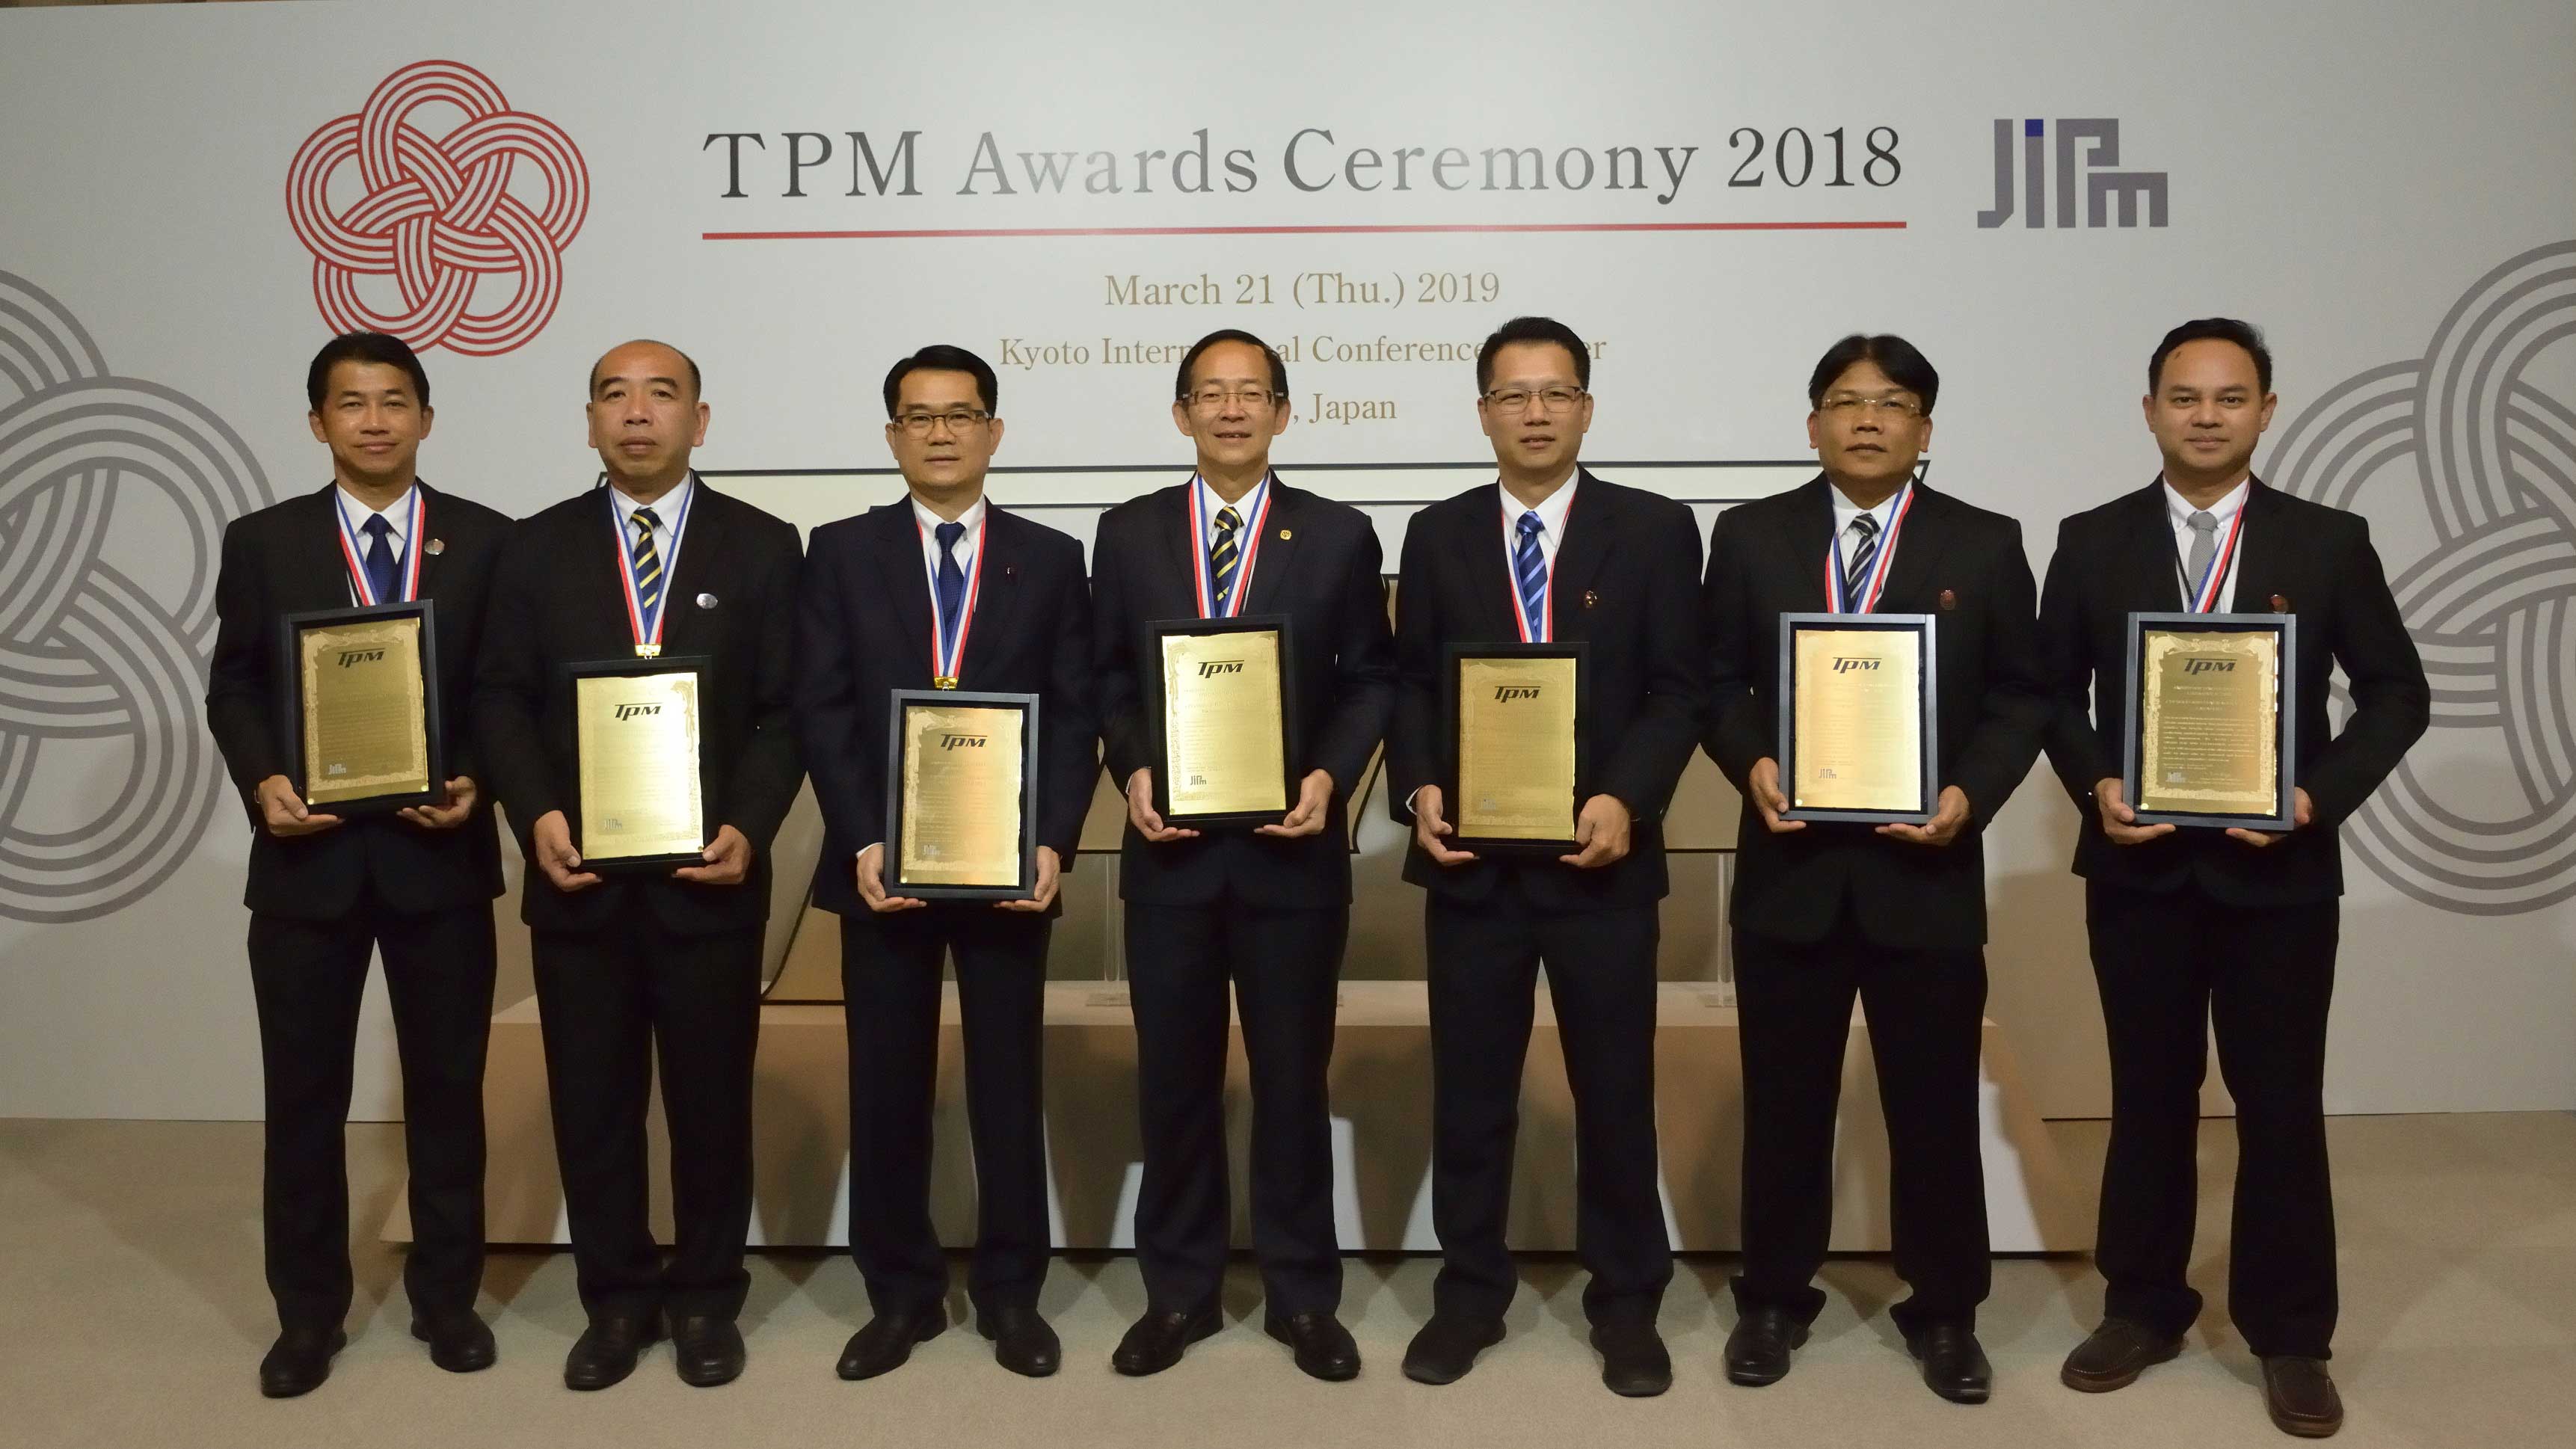 ซีพีเอฟ - ซี.พี.เวียดนาม คว้า 7 รางวัลระดับโลก TPM 2018 จากญี่ปุ่น 